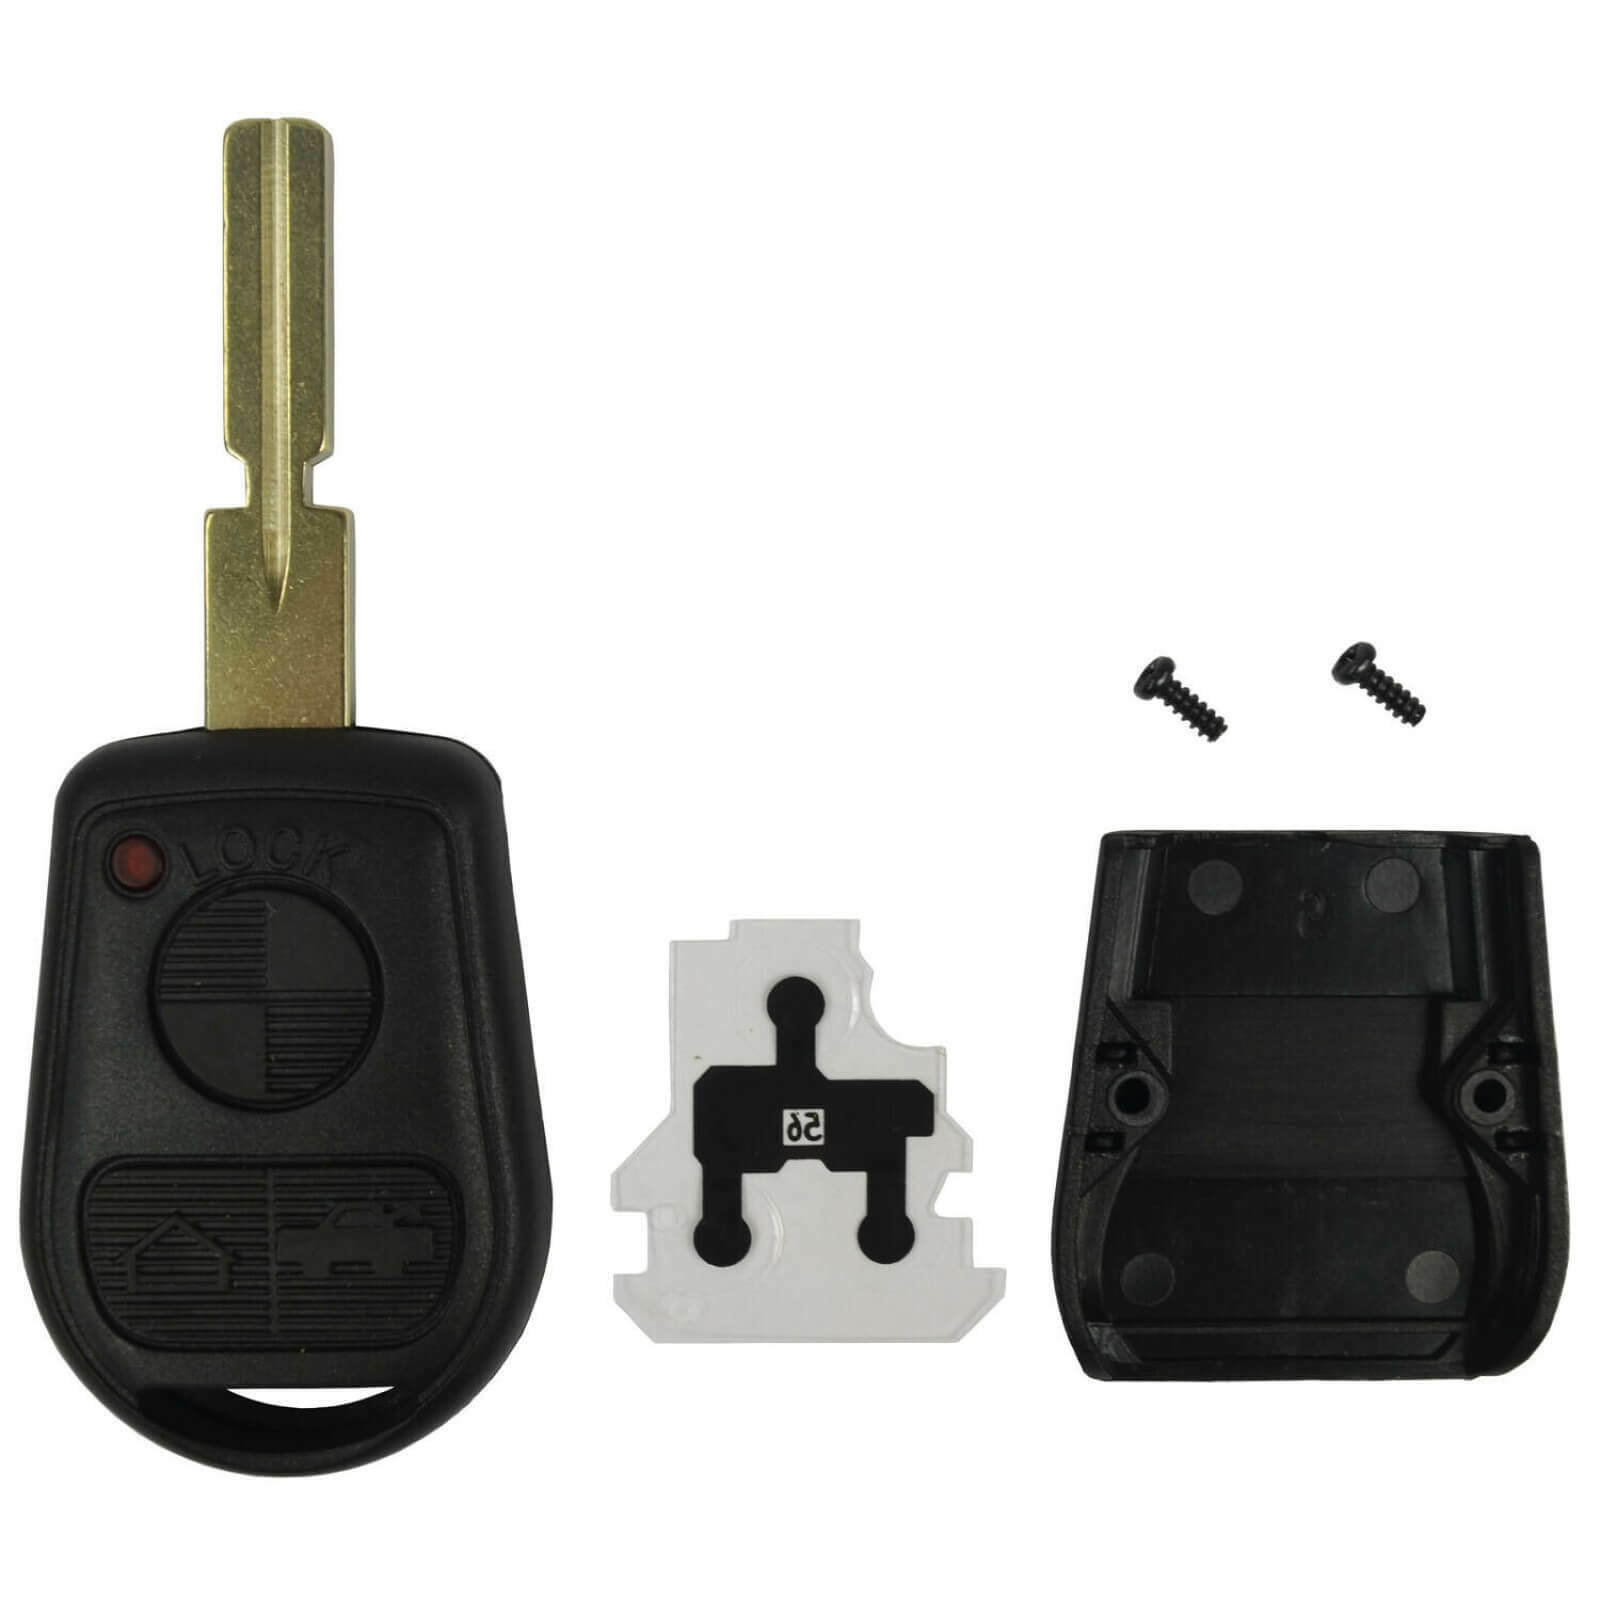 Case for BMW Remote Head Key Fob FCC ID LX8 FZV 3 Button w/ Uncut Notched Blade